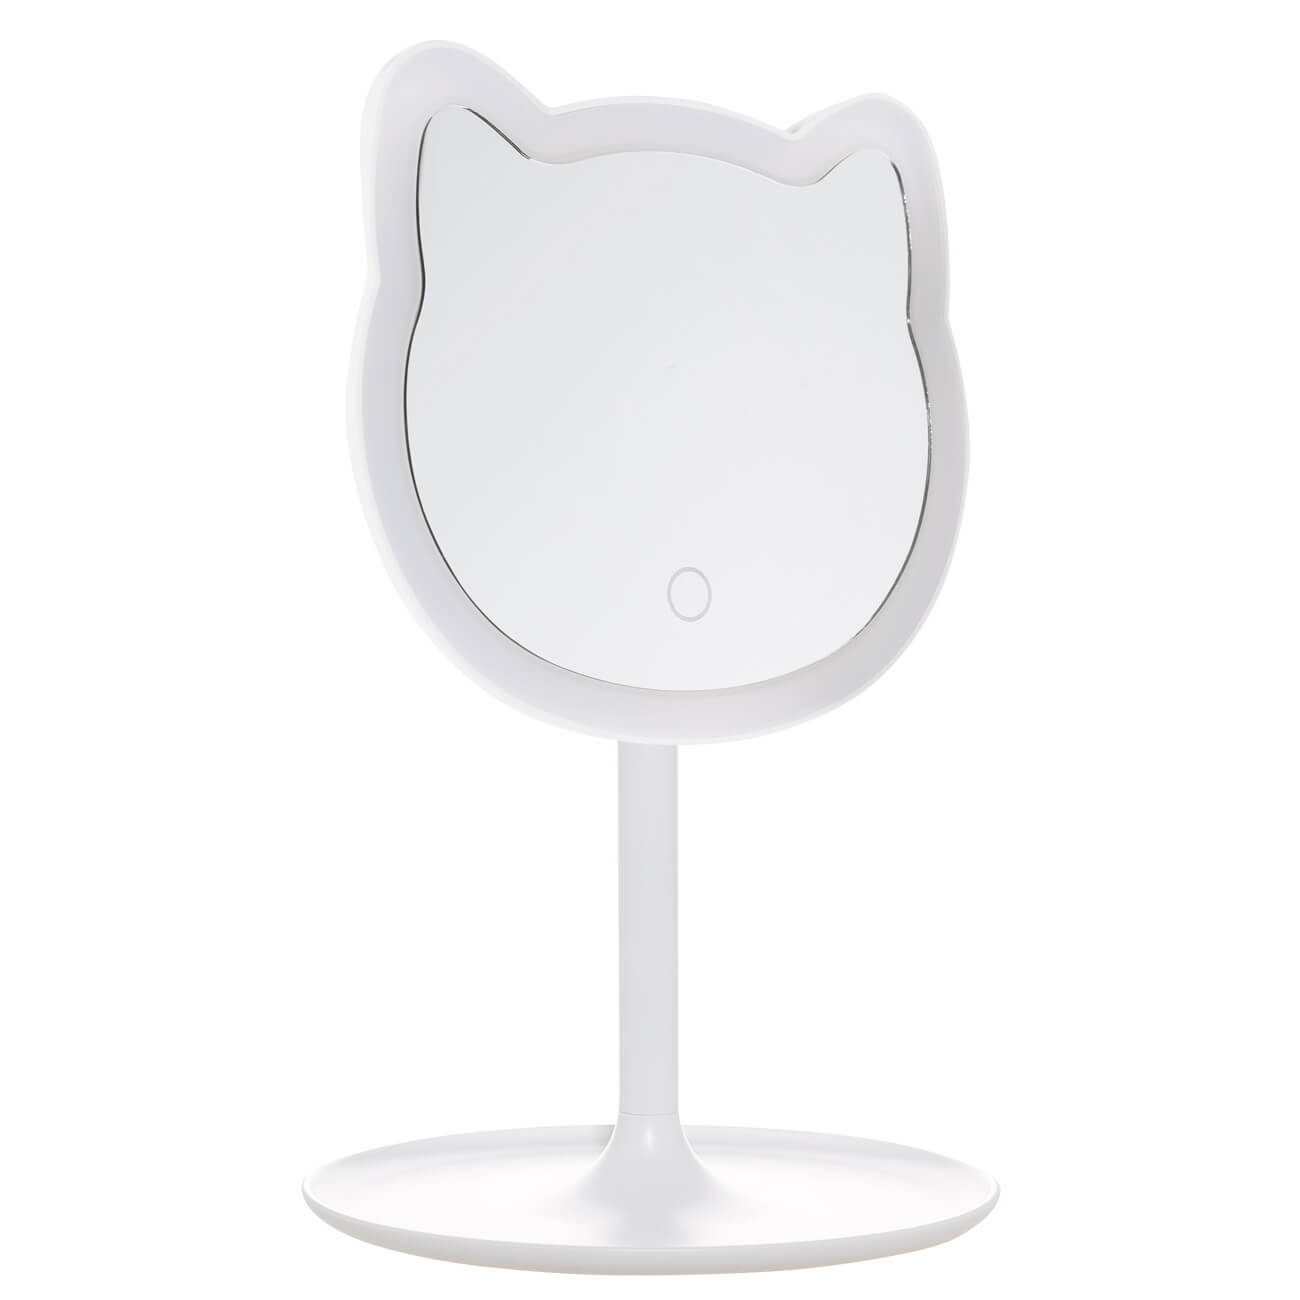 Зеркало настольное, 29 см, с подсветкой, на подставке, пластик, белое, Кот, Cat раскладное настольное зеркало для макияжа bradex